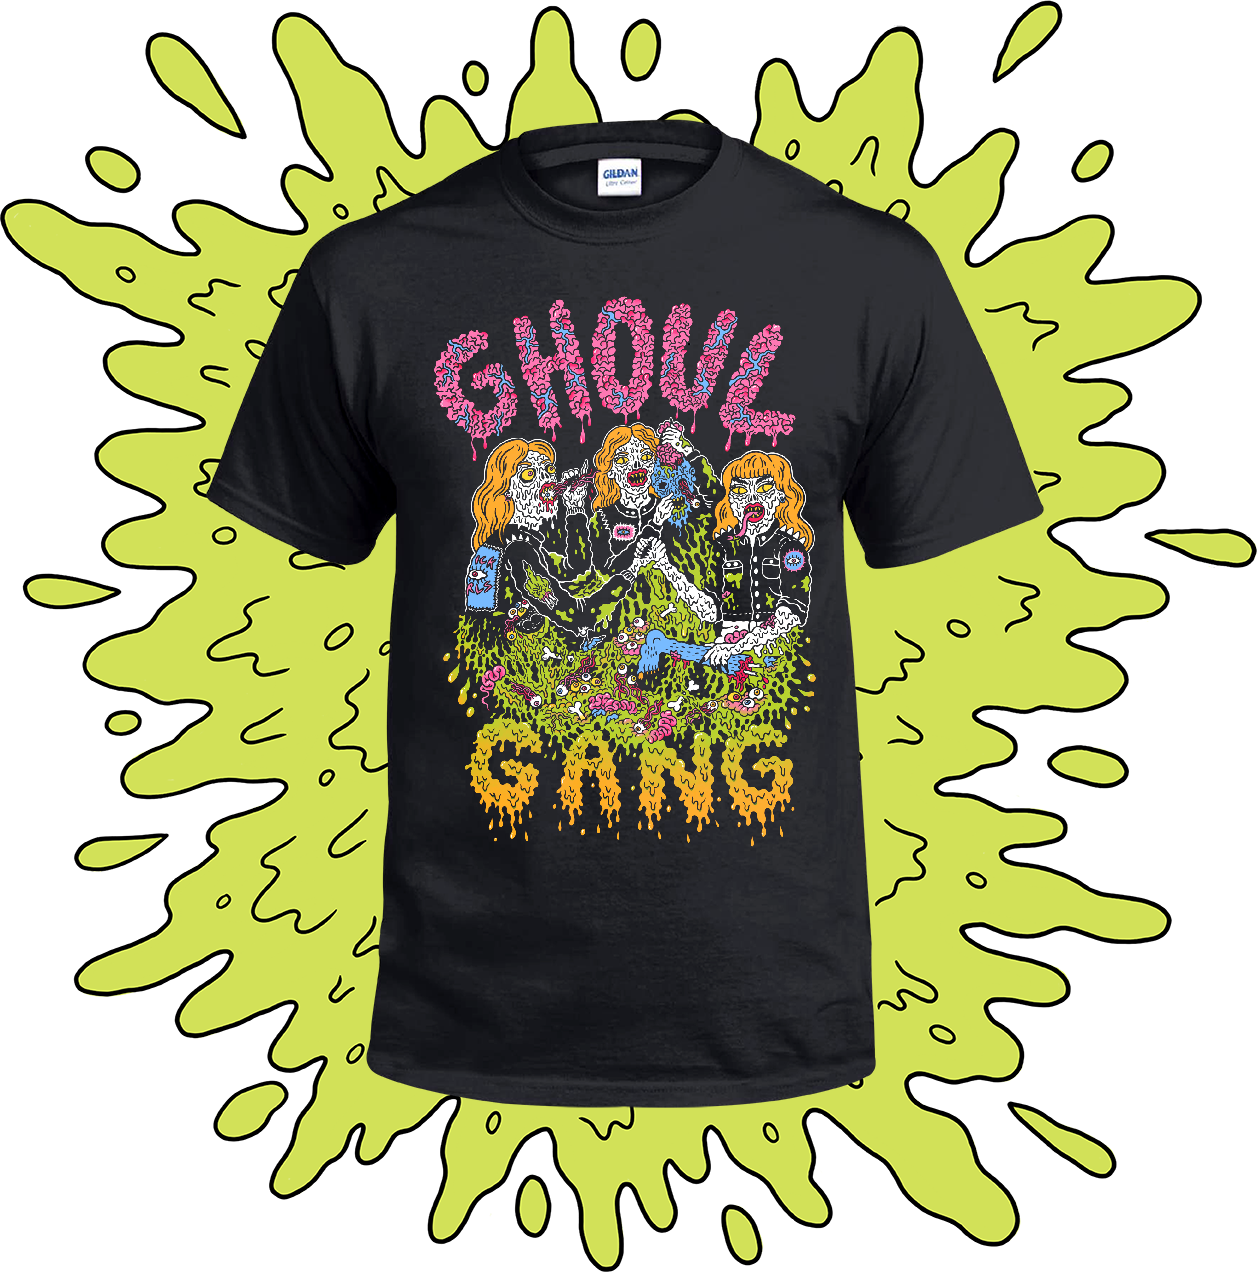 Ghoul Gang